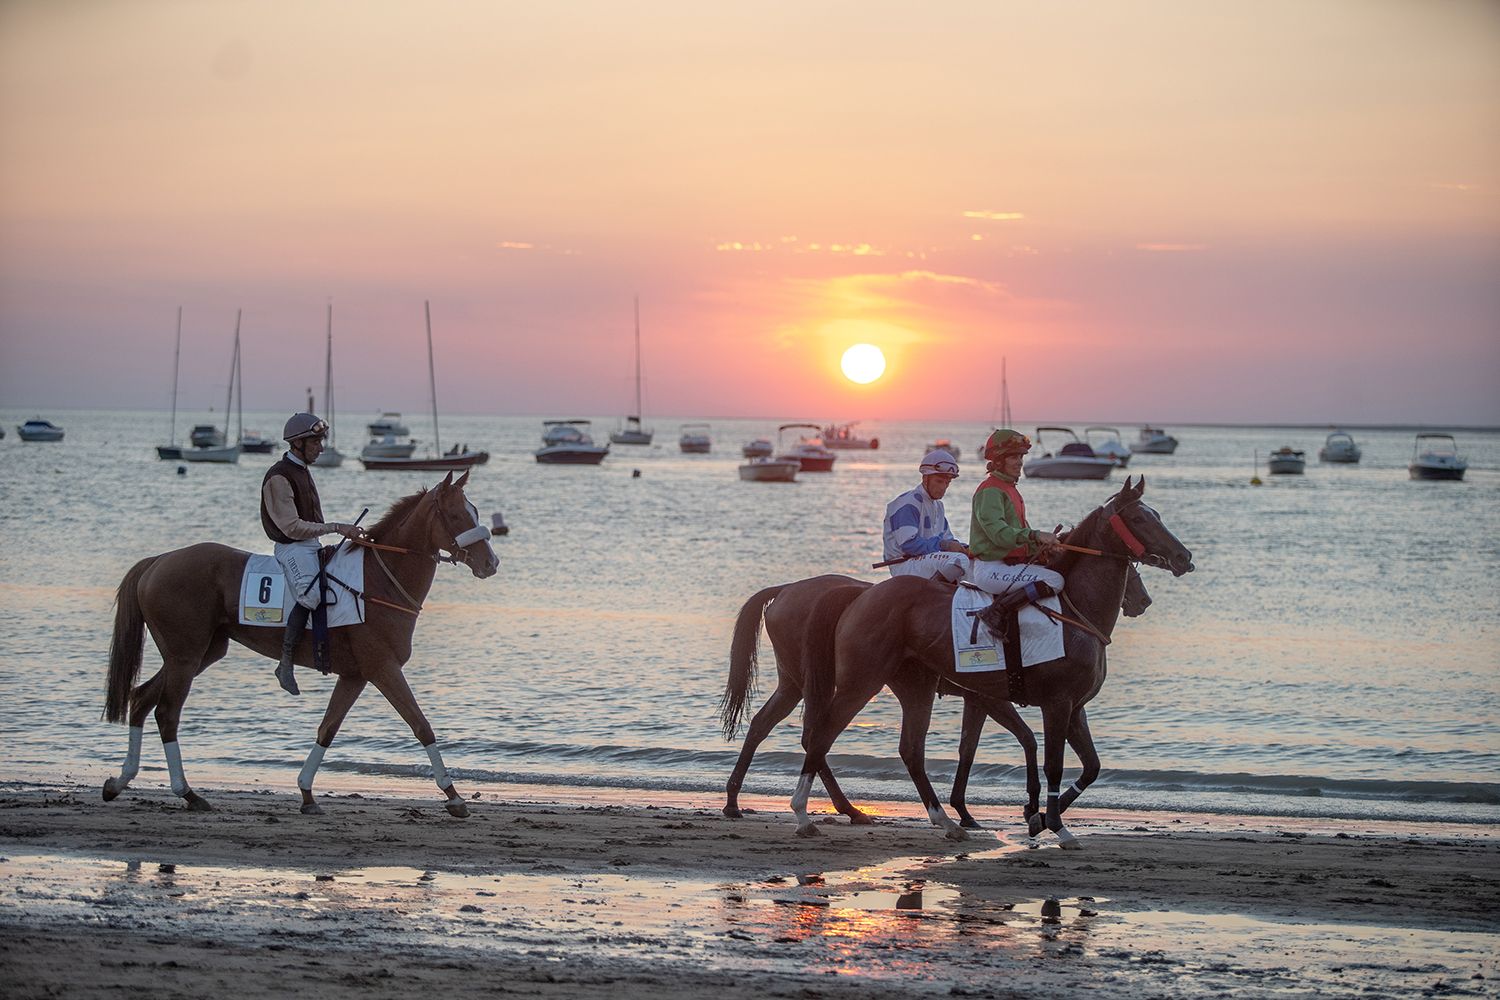 Carreras de caballos en la playa en Sanlúcar, Cádiz2018.